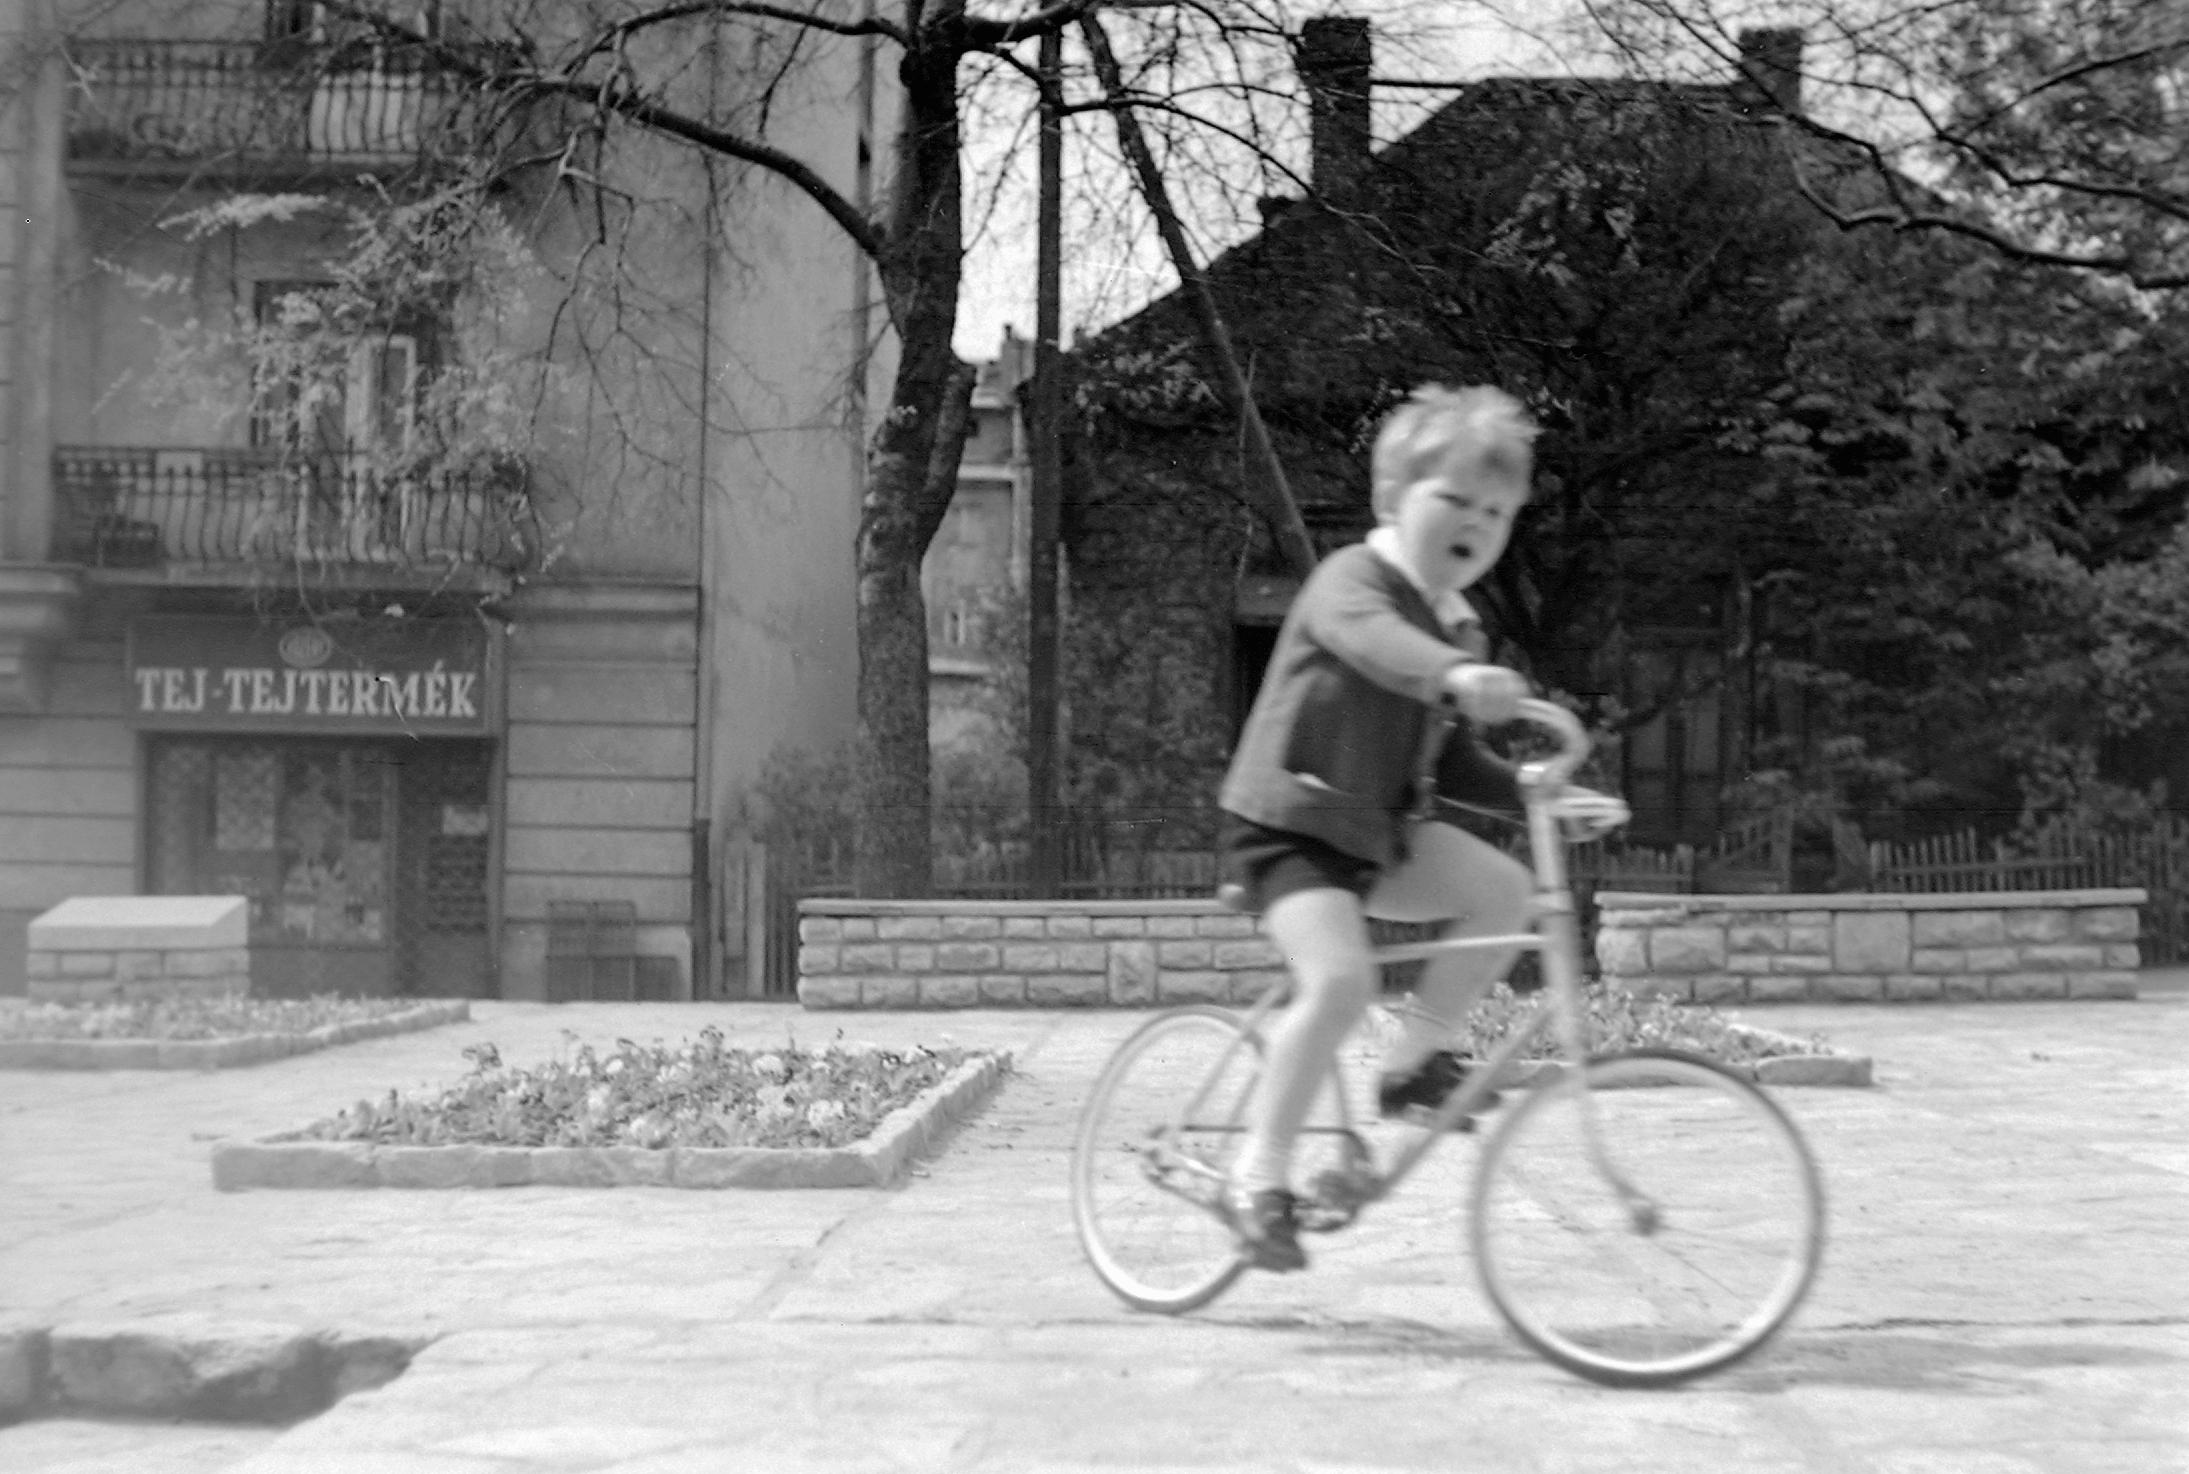 Egy kisfiú biciklizik a Királyhágó (akkor Joliot-Curie) téren az 1960-as évek elején. Háttérben látható egy Tejtermék bolt és a Nemzetközi Rózsakert emléktáblája.